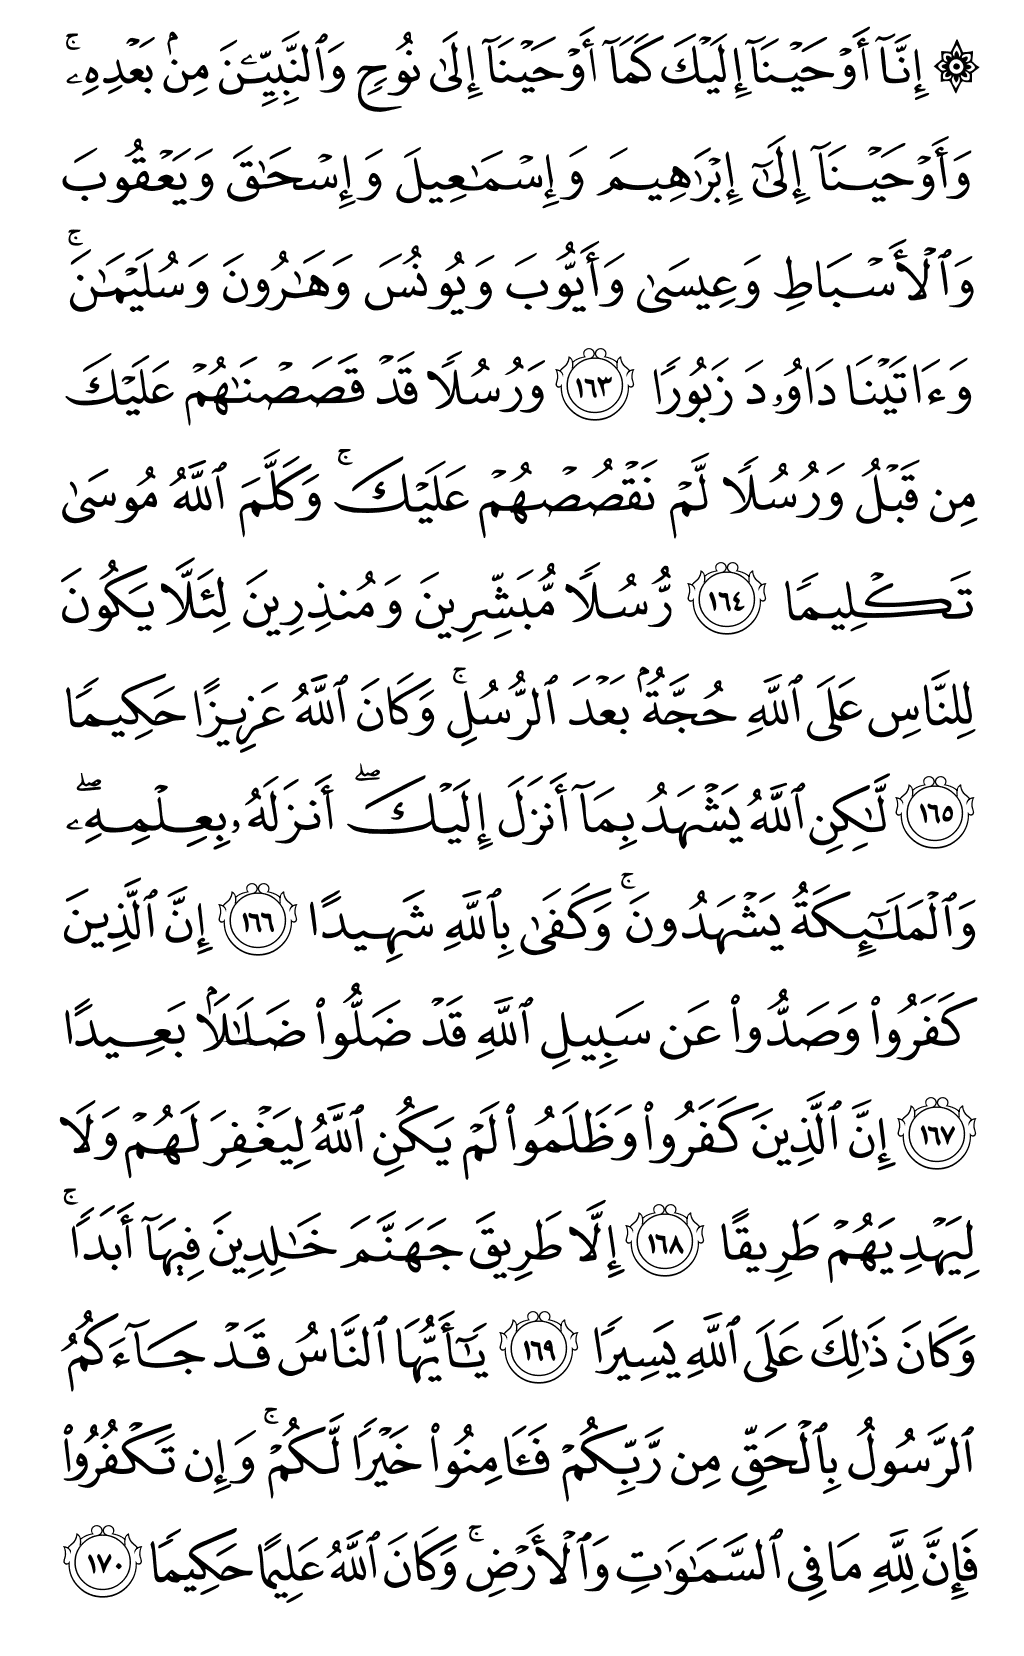 الصفحة رقم 104 من القرآن الكريم